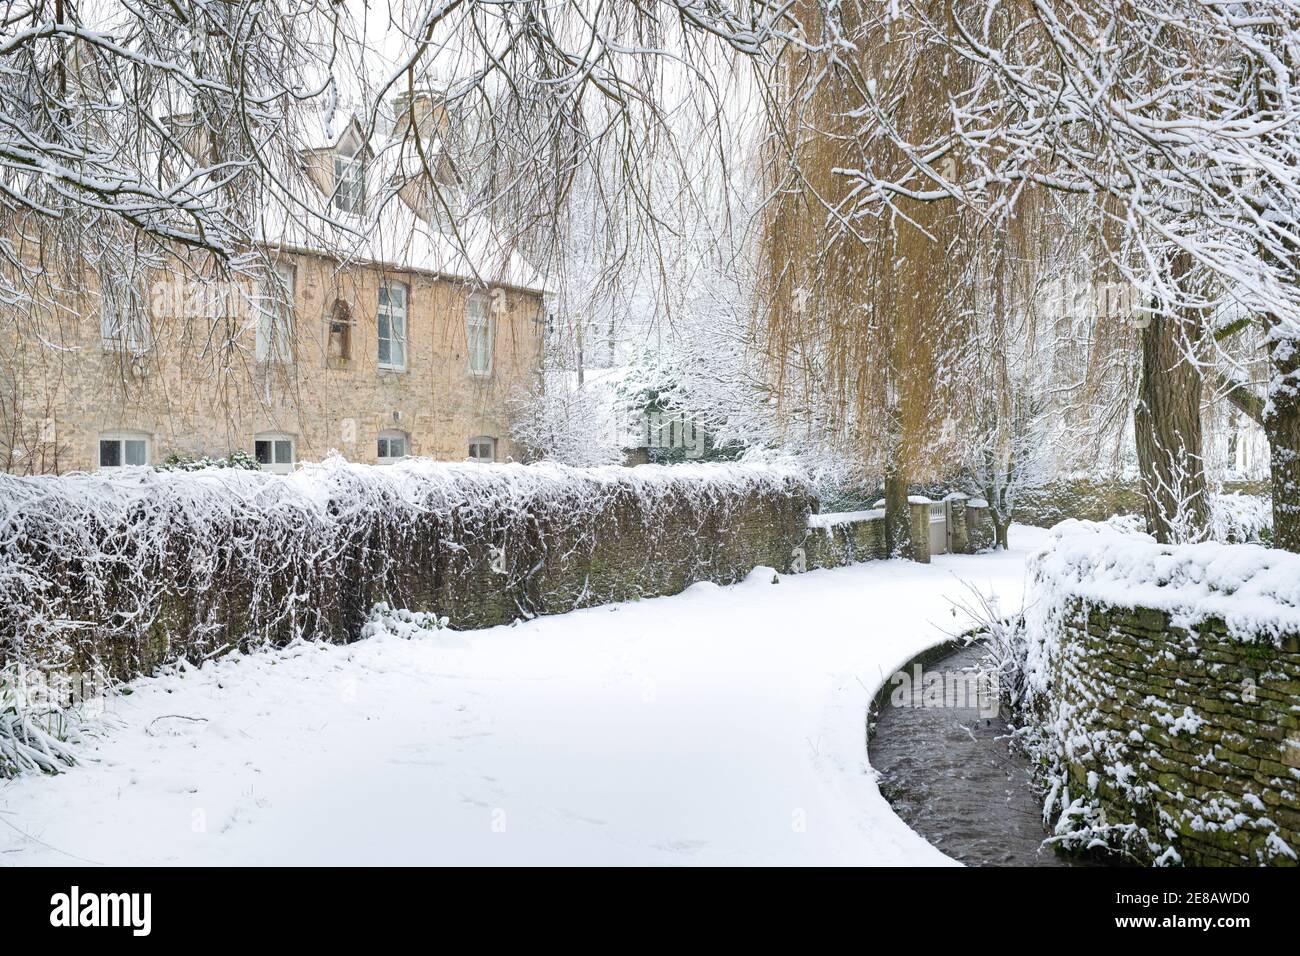 Cotswold maison en pierre à Swinbrook dans la neige. Swinbrook, Cotswolds, Oxfordshire, Angleterre Banque D'Images